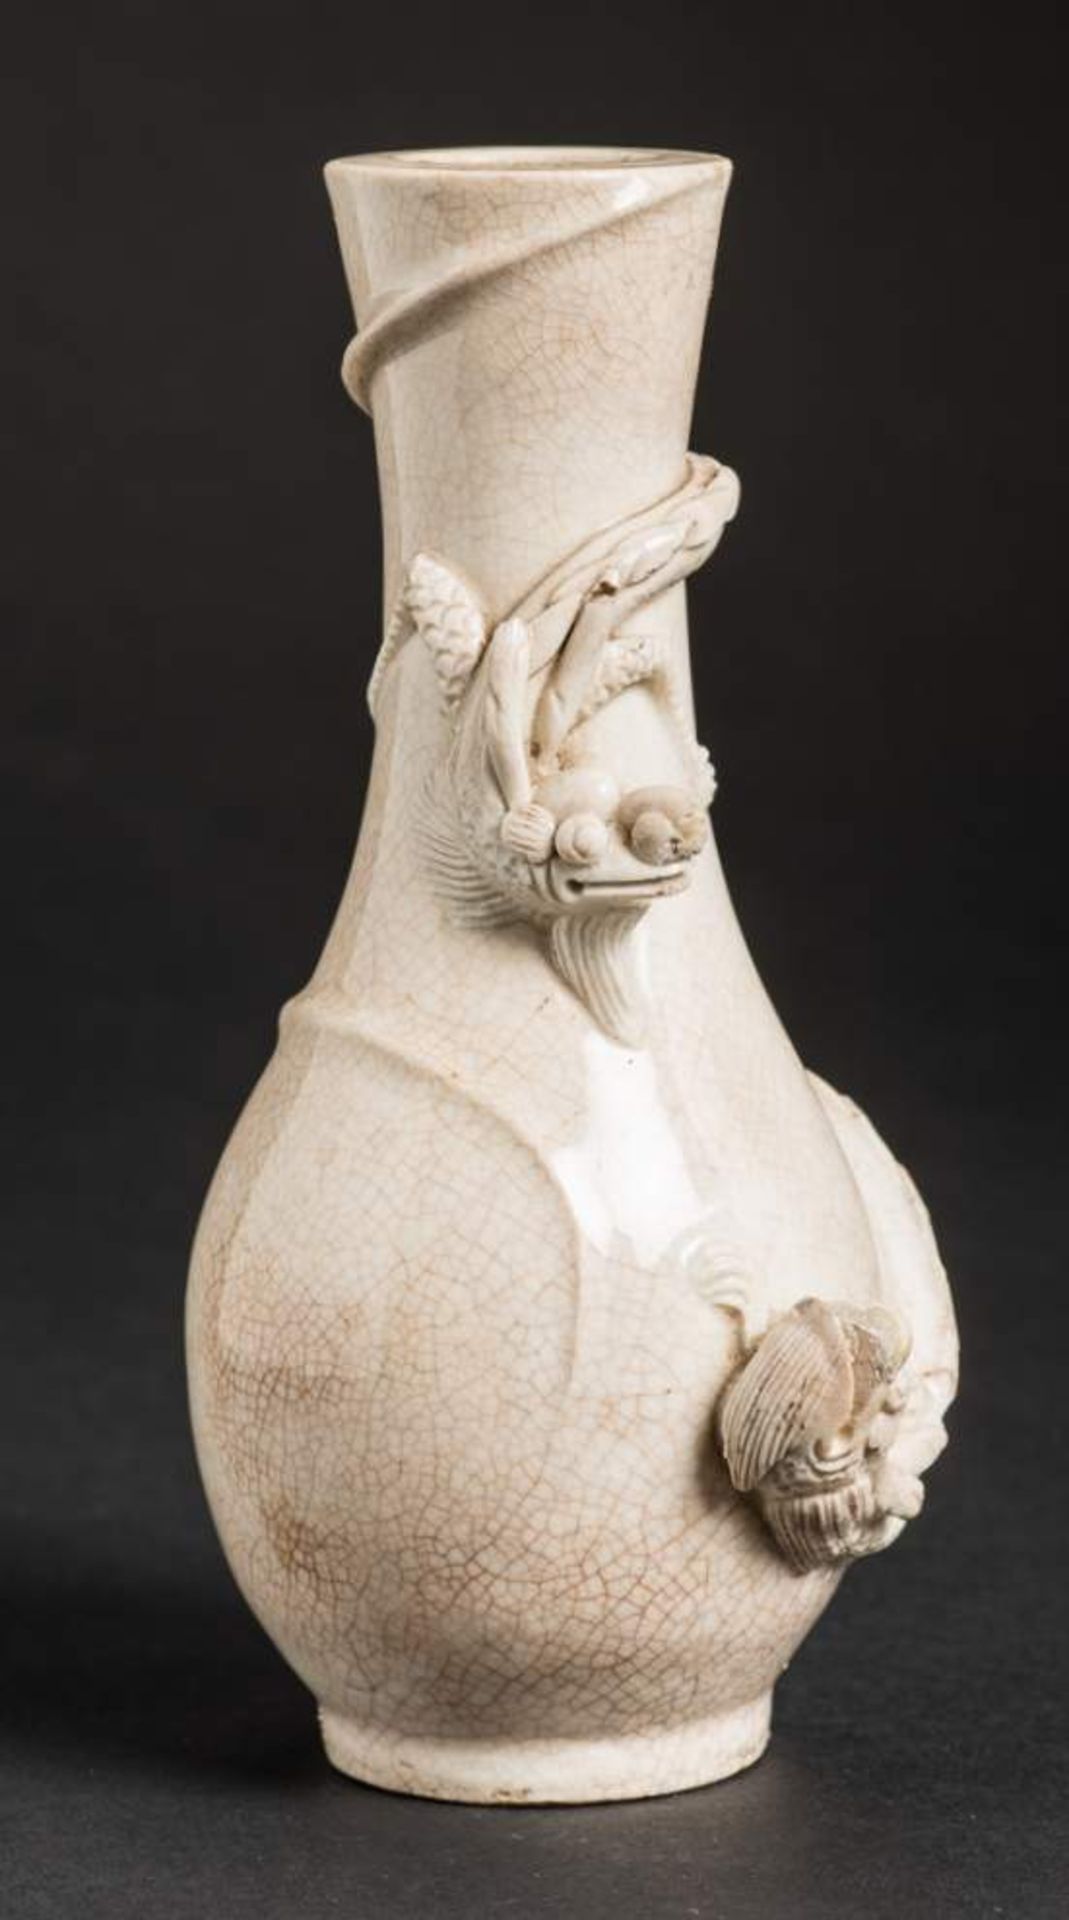 VASE MIT ZWEI DRACHEN
Biskuit Porzellan. China, späte Qing-Dynastie, ca. 19. Jh.Kleine Vase mit